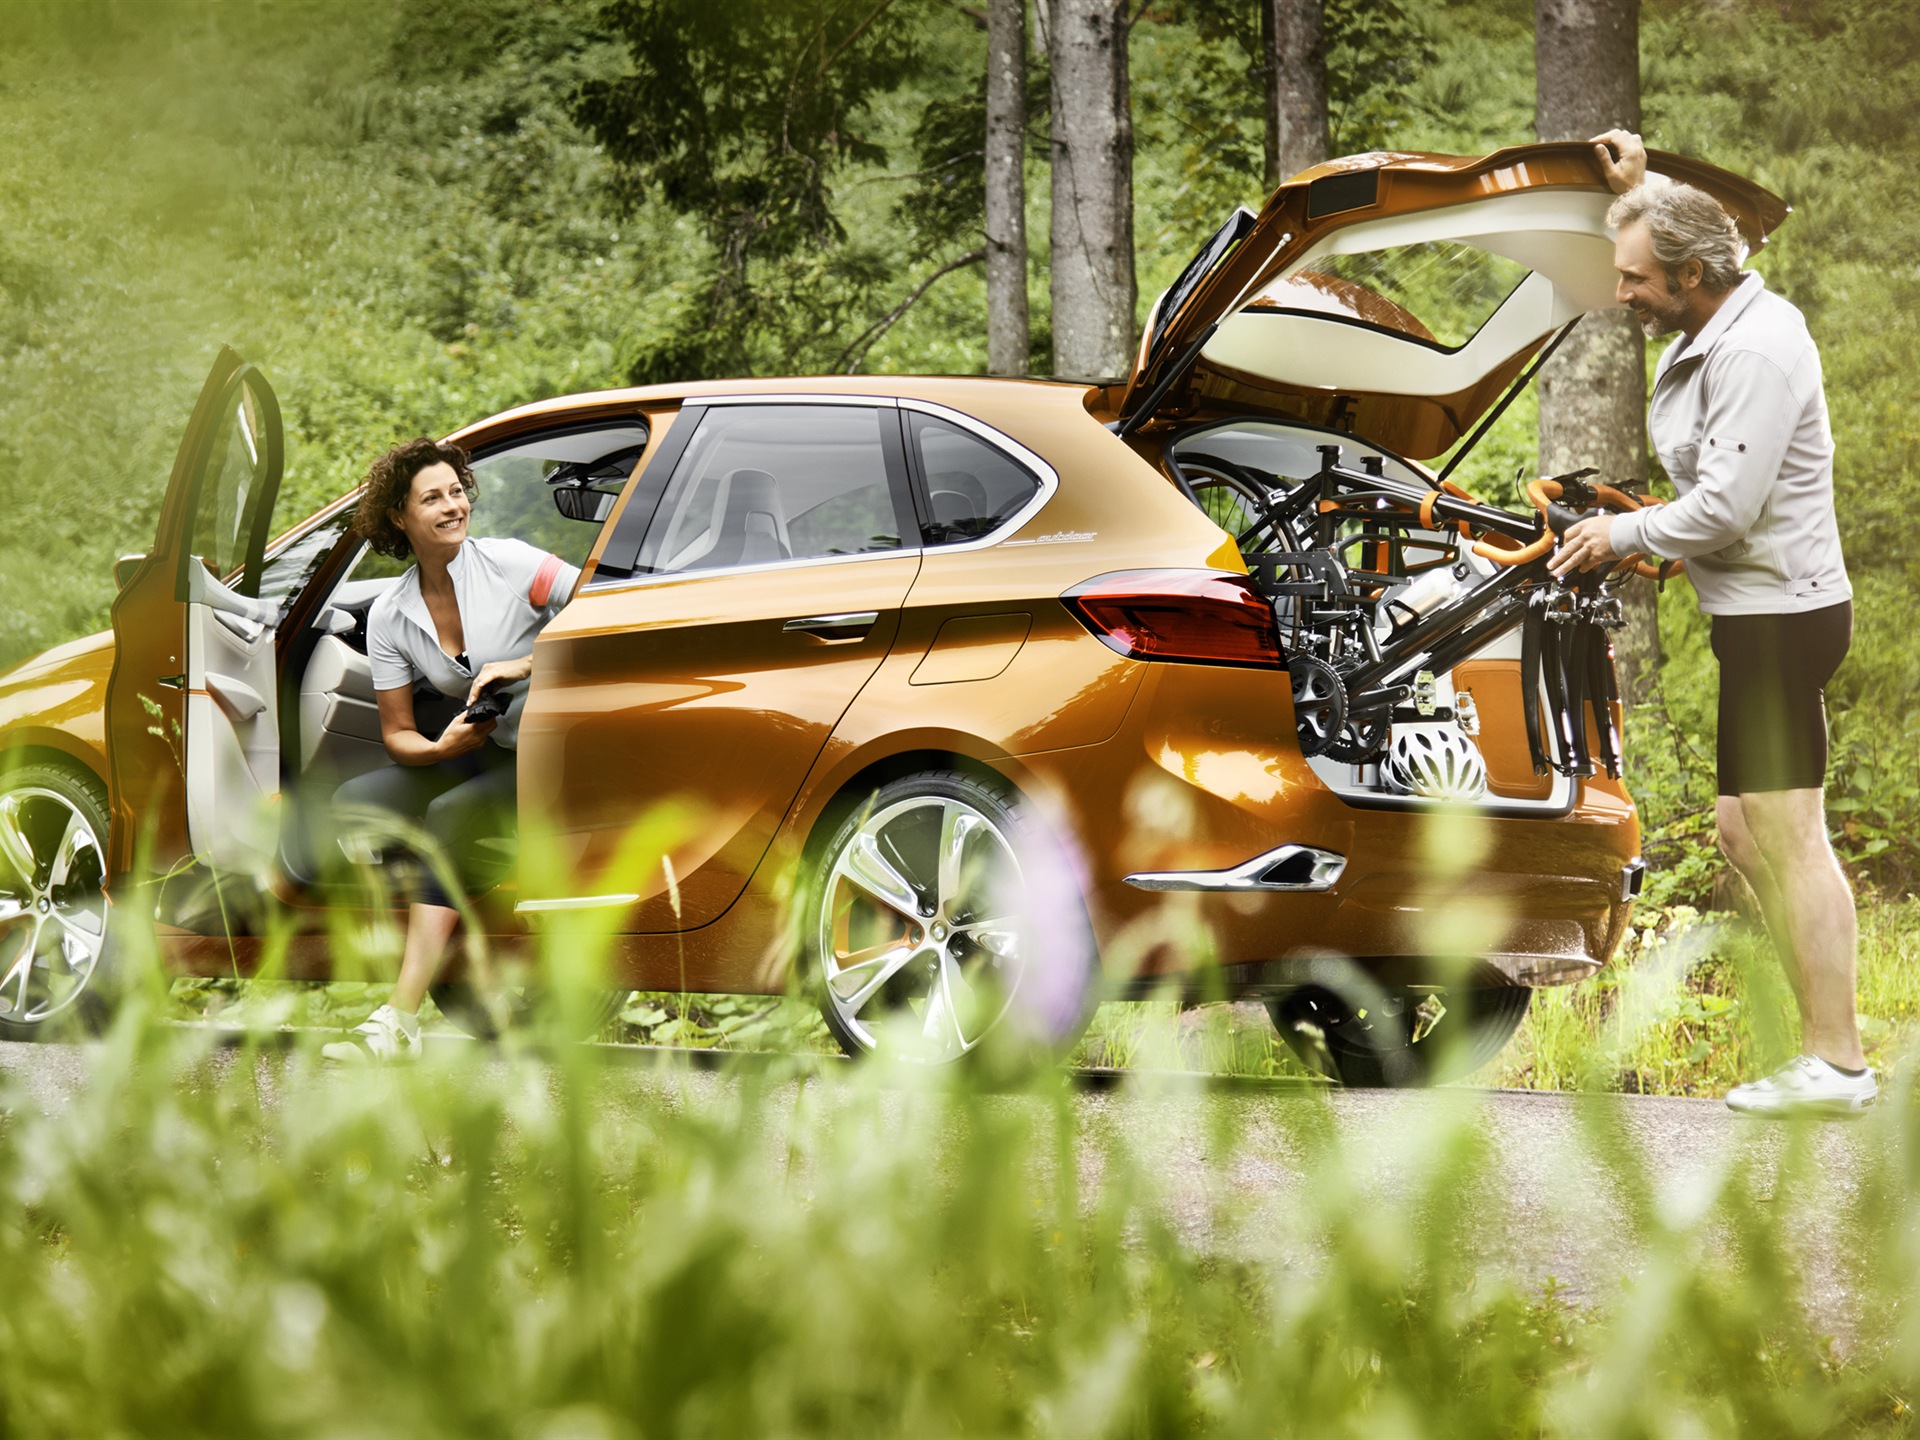 2013 BMW Concept Active Tourer 宝马旅行车 高清壁纸9 - 1920x1440